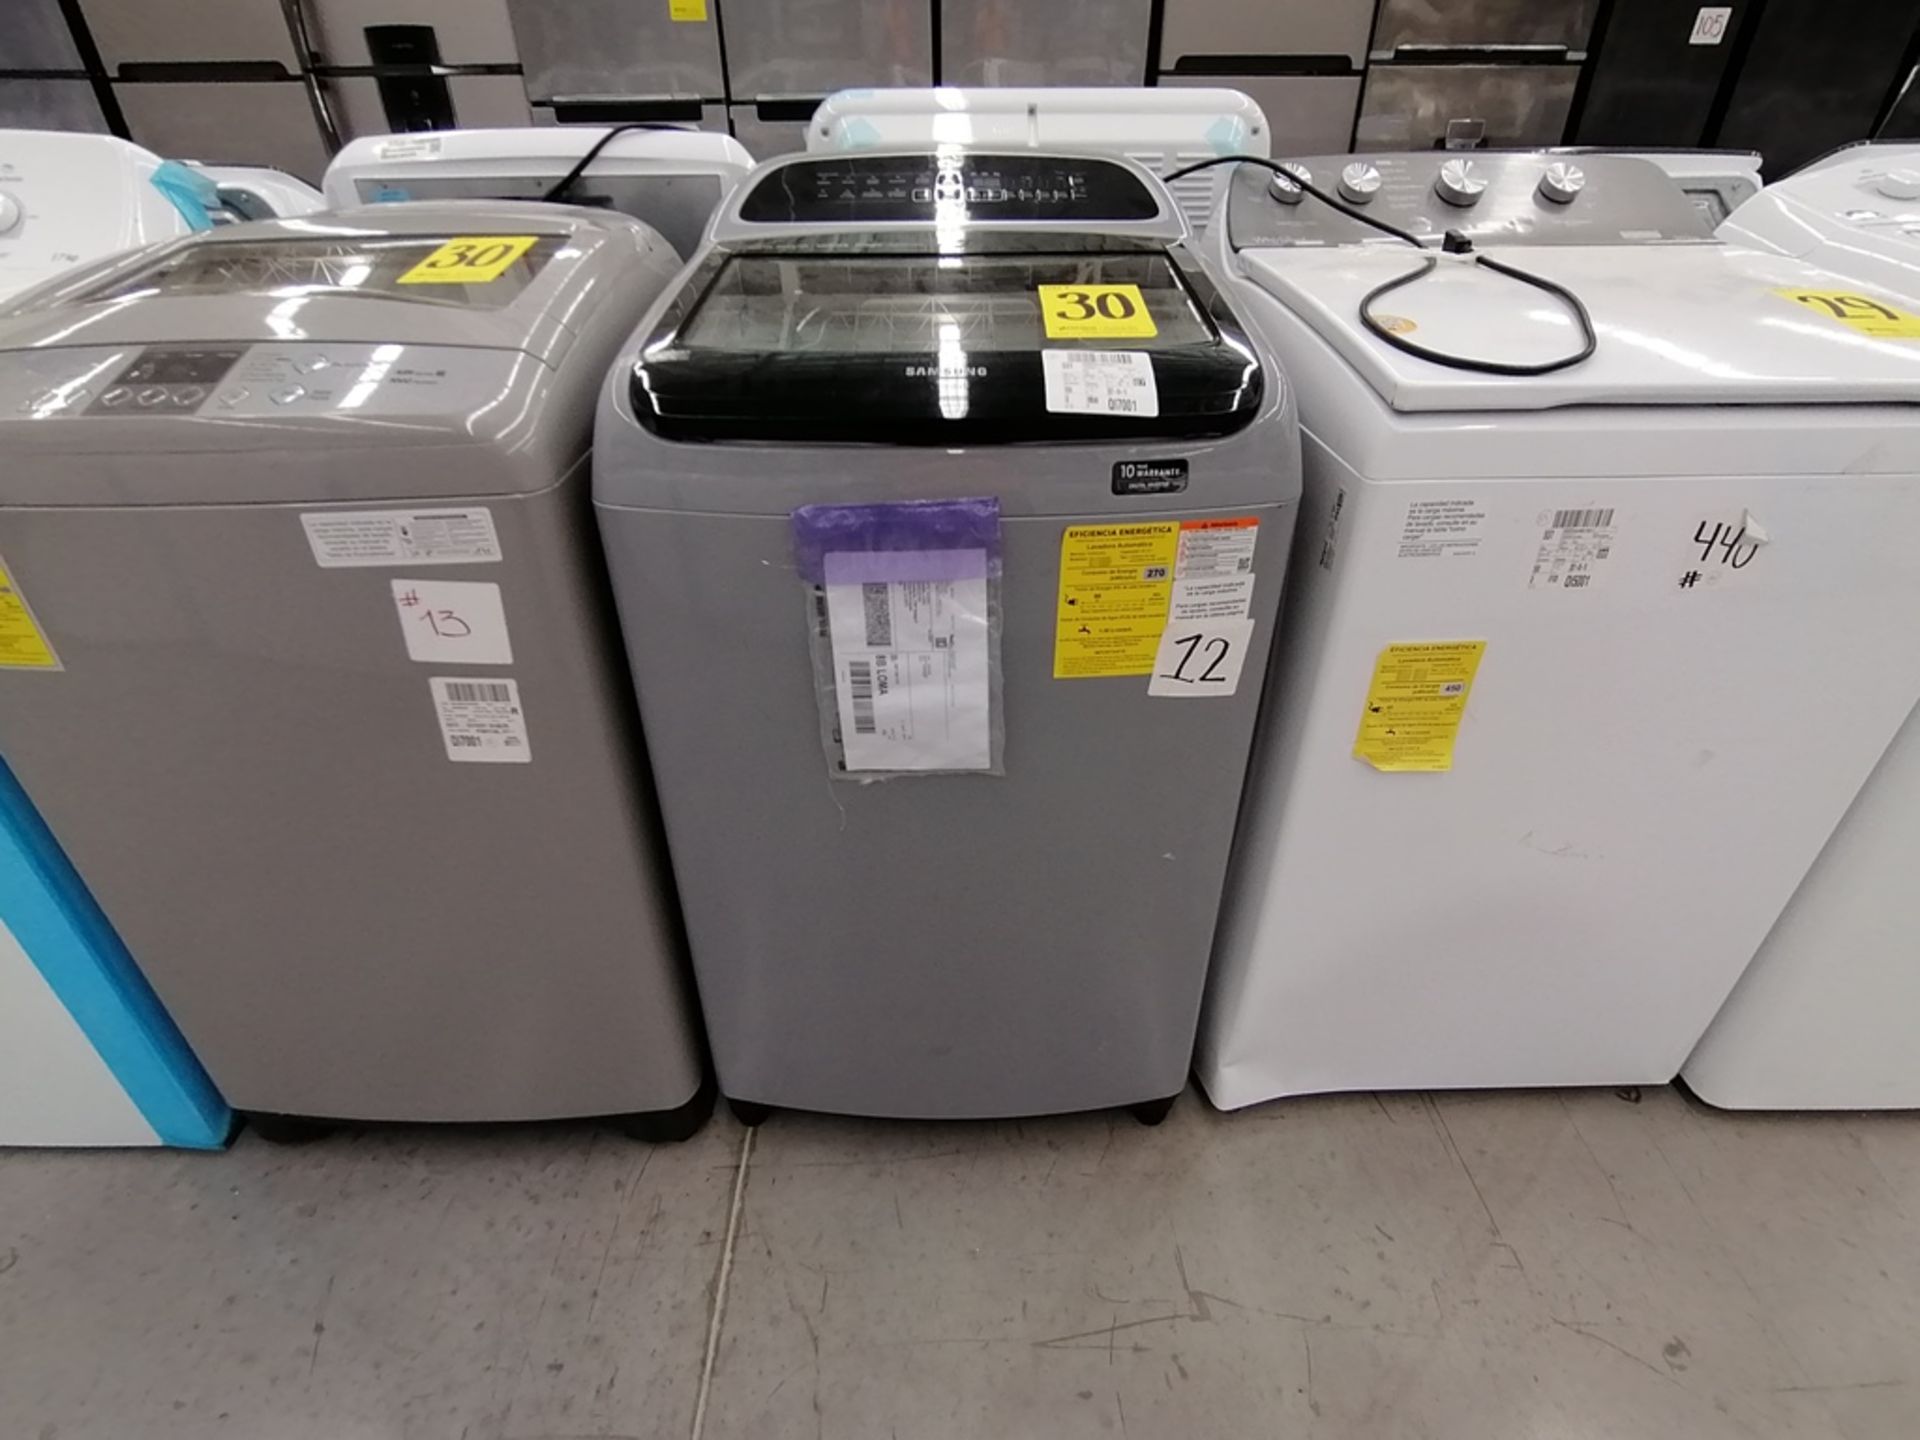 Lote de 3 lavadoras contiene: 1 Lavadora de 17KG, Marca Easy, Modelo LEA77114CBAB03, Serie 2105S552 - Image 3 of 30